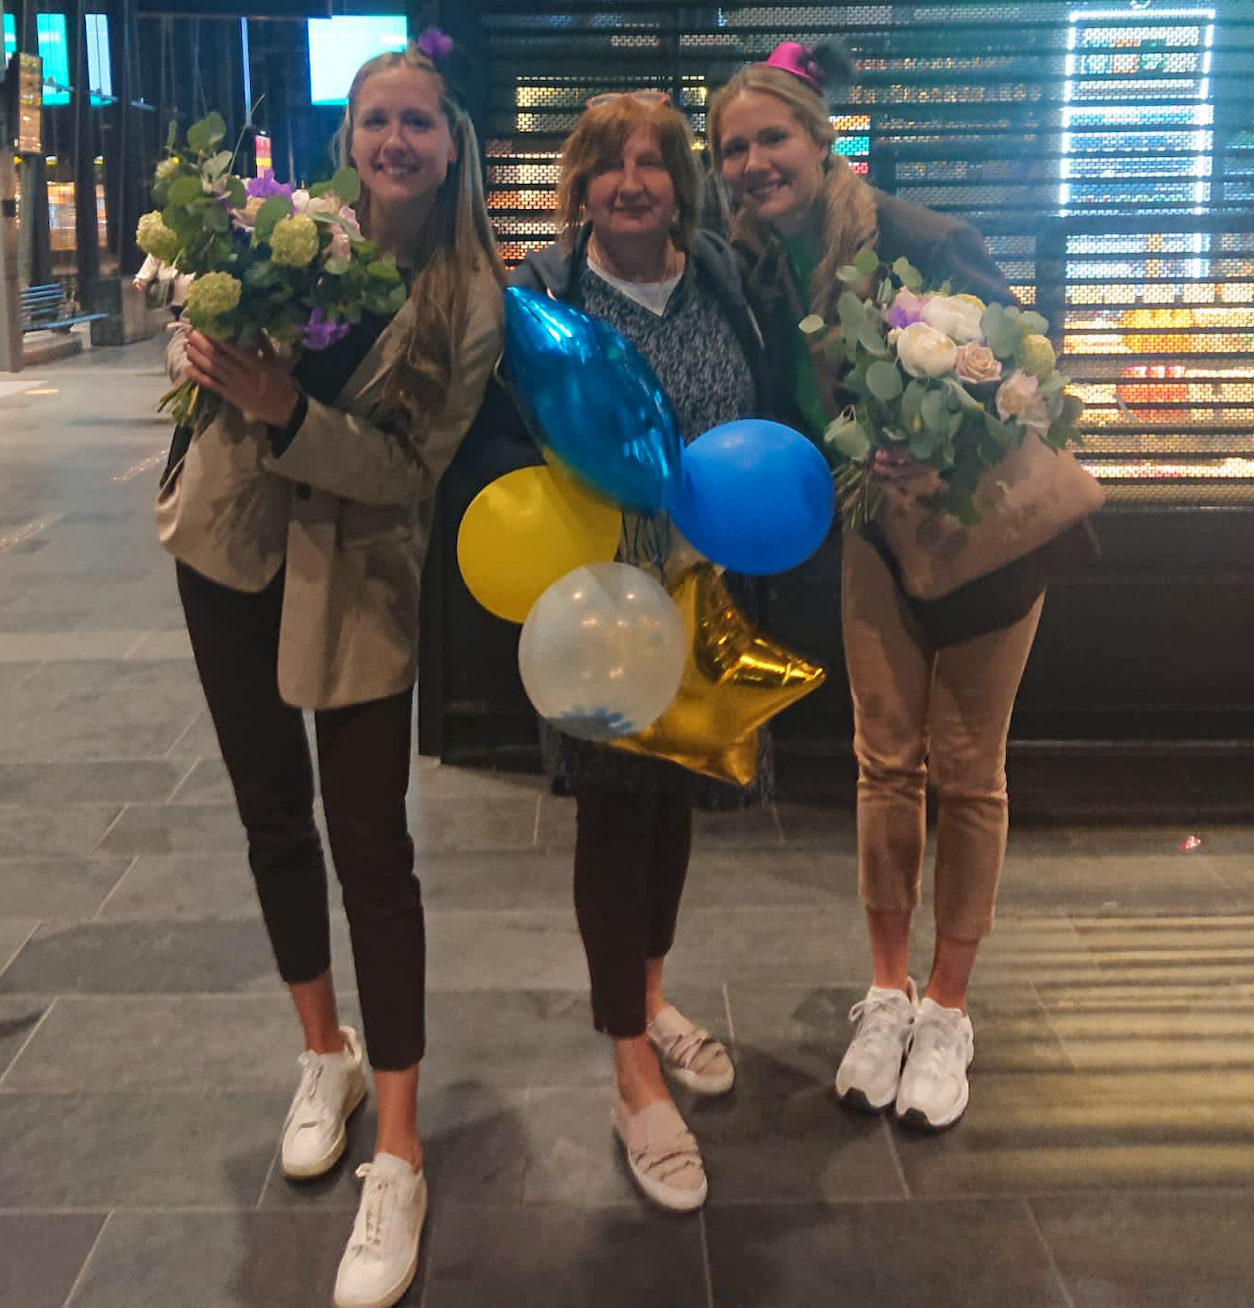 Tvillingsystrarna Alexandra och Rebecka Lazic, 28, tillsammans med mamma Snjezana Lazic, 60, efter redovisningen av examensarbetet.